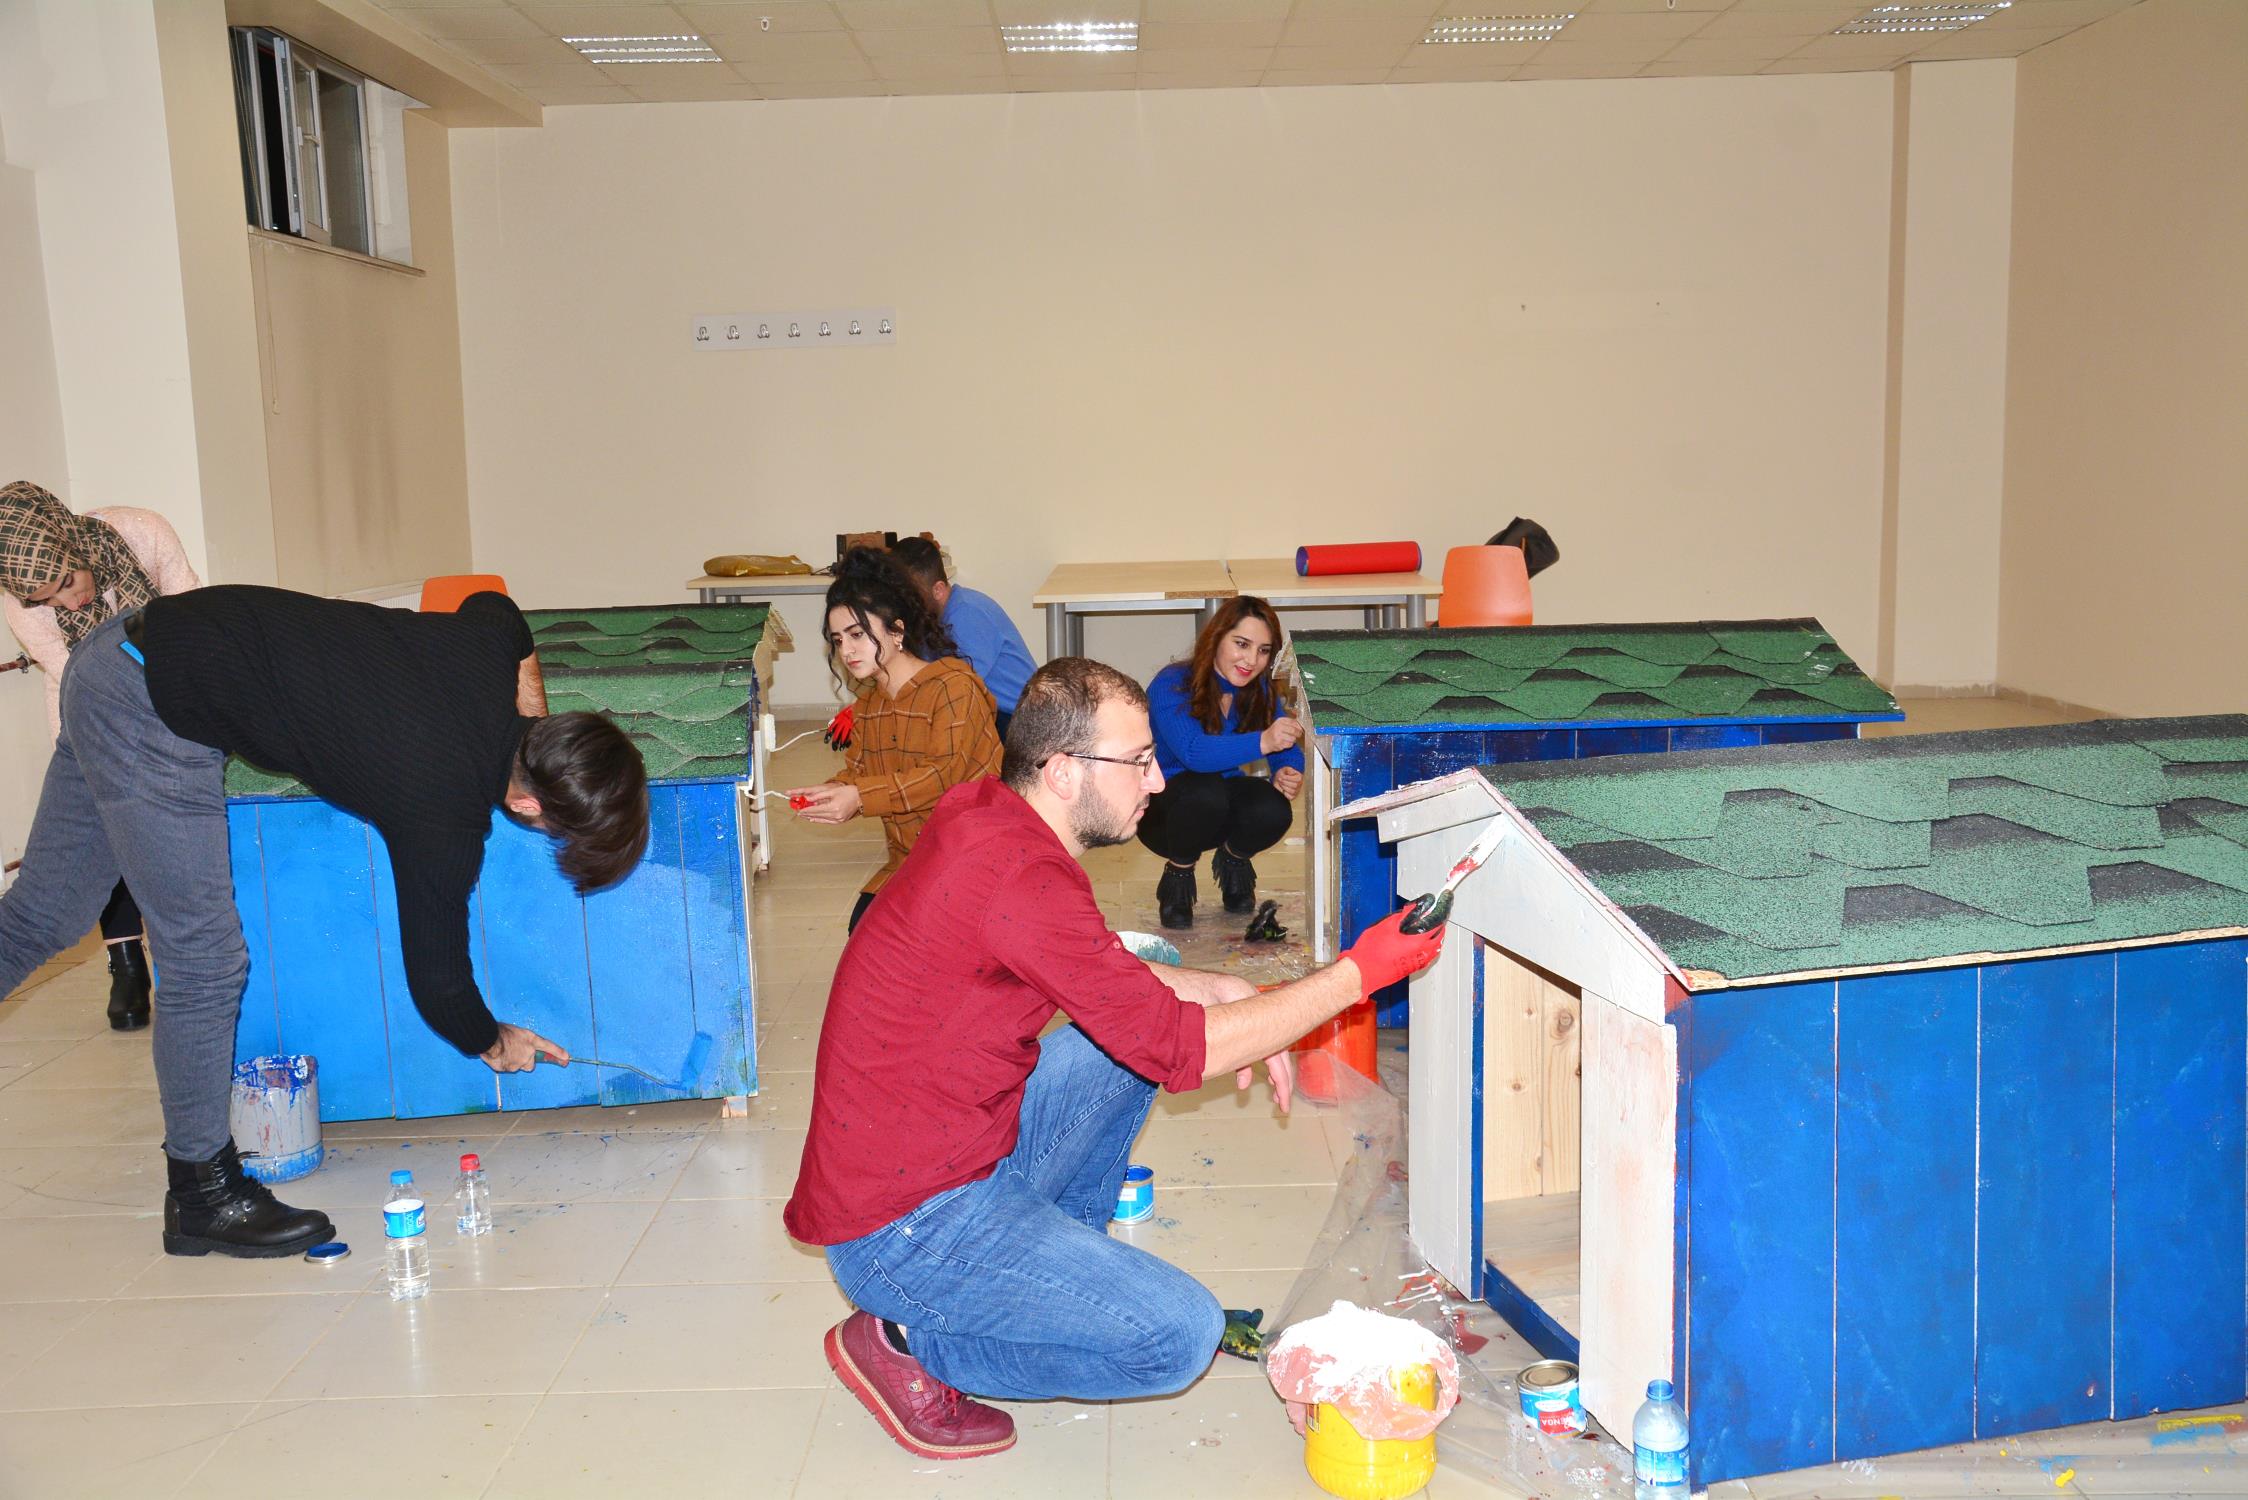 Bitlis Eren Üniversitesi Hayvanları Sevgiyle Koruma, Toplum Gönüllüleri Öğrenci Toplulukları ile Gençlik Merkezi öğrencileri tarafından sokak hayvanları için ahşap kulübe yapılarak Rahva Yerleşkesi’ndeki kampüs alanına bırakıldı.
